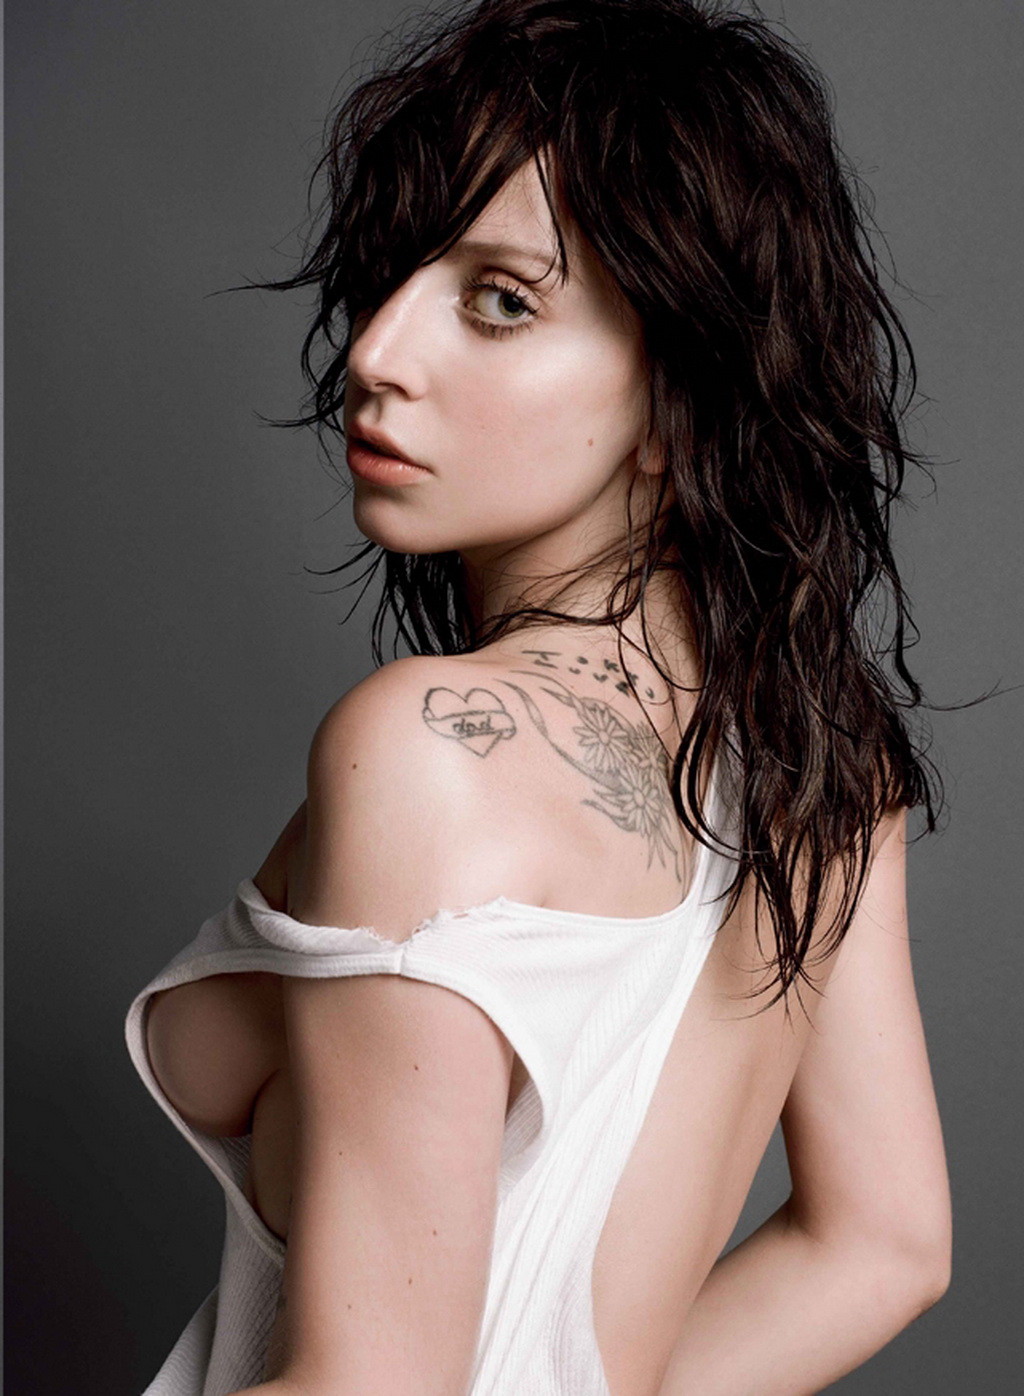 Lady Gaga völlig nackt aber versteckt ihre Muschi im V-Magazin
 #75221361